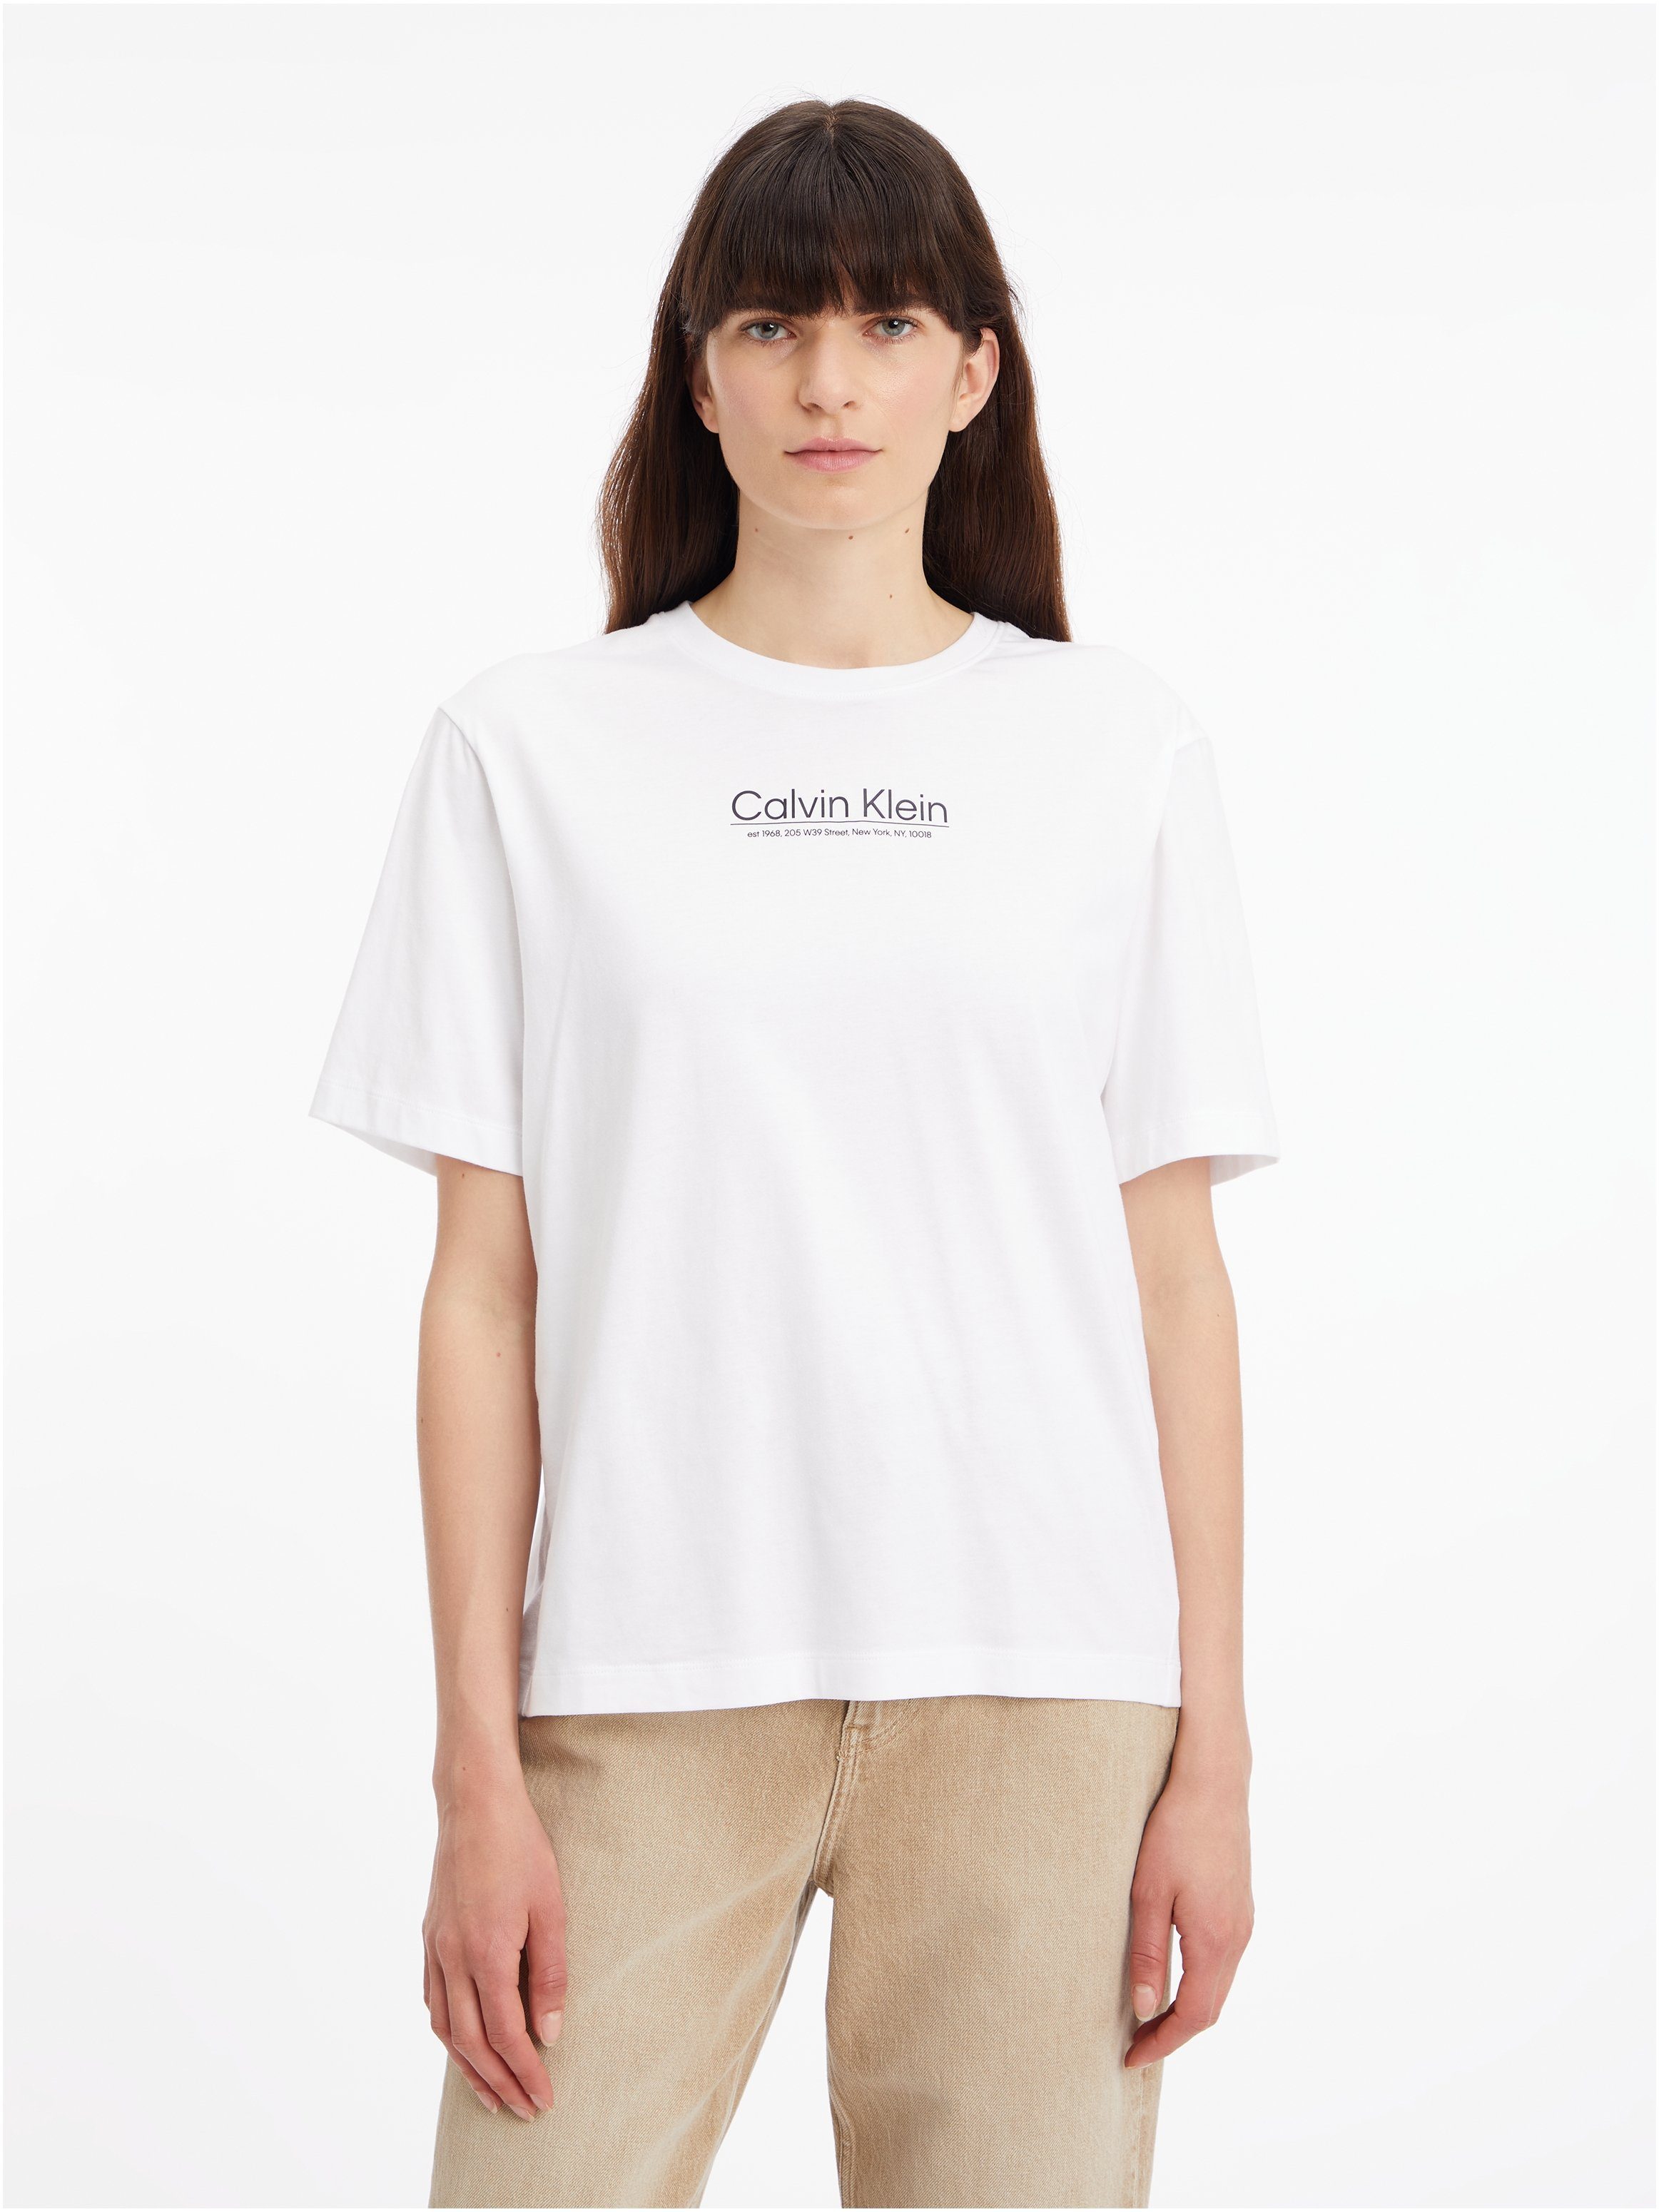 Klein T-SHIRT Calvin mit T-Shirt Logo- LOGO COORDINATES Klein GRAPHIC Calvin Schriftzug